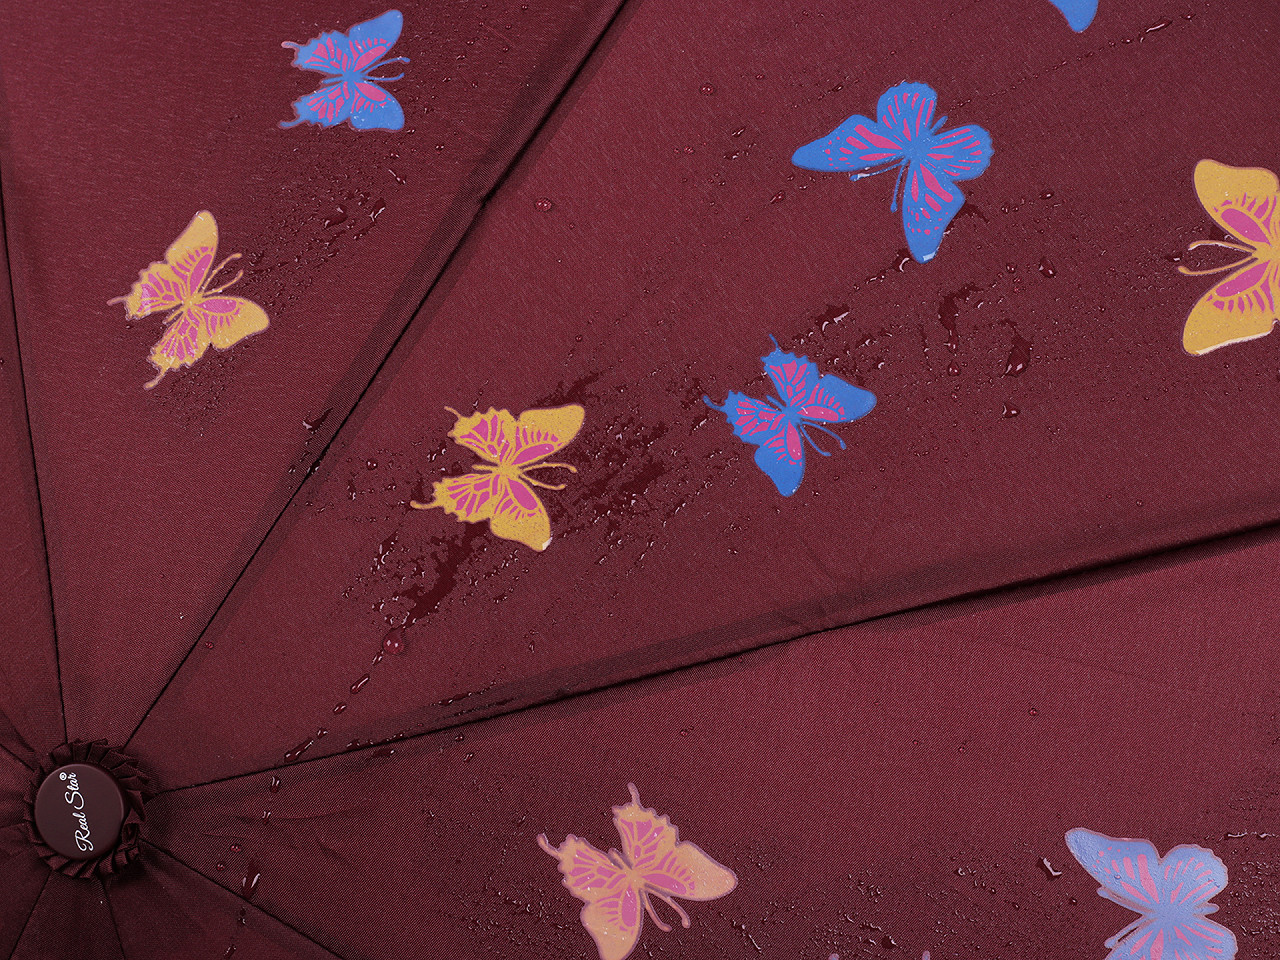 Umbrela pliabilă automată pentru femei, fluture magic, neagră, 1 buc